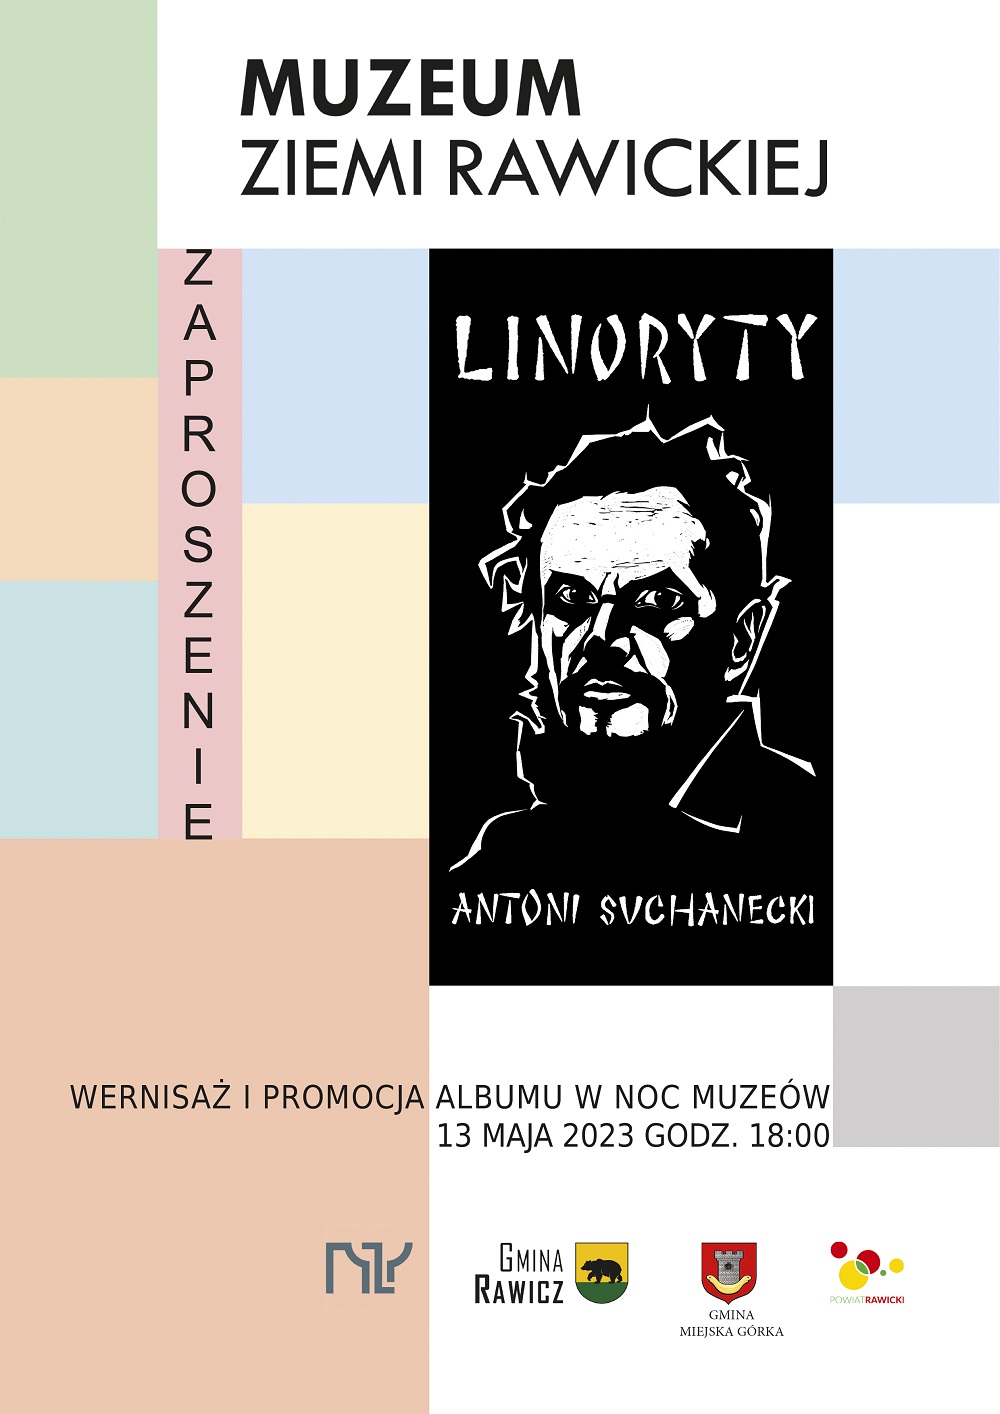 Muzeum Ziemi Rawickiej zaprasza 13 maja 2023 r. o godzinie 18.00 na promocję albumu "Antoni Suchanecki - Linoryty" - połączoną z wernisażem wystawy Autora.